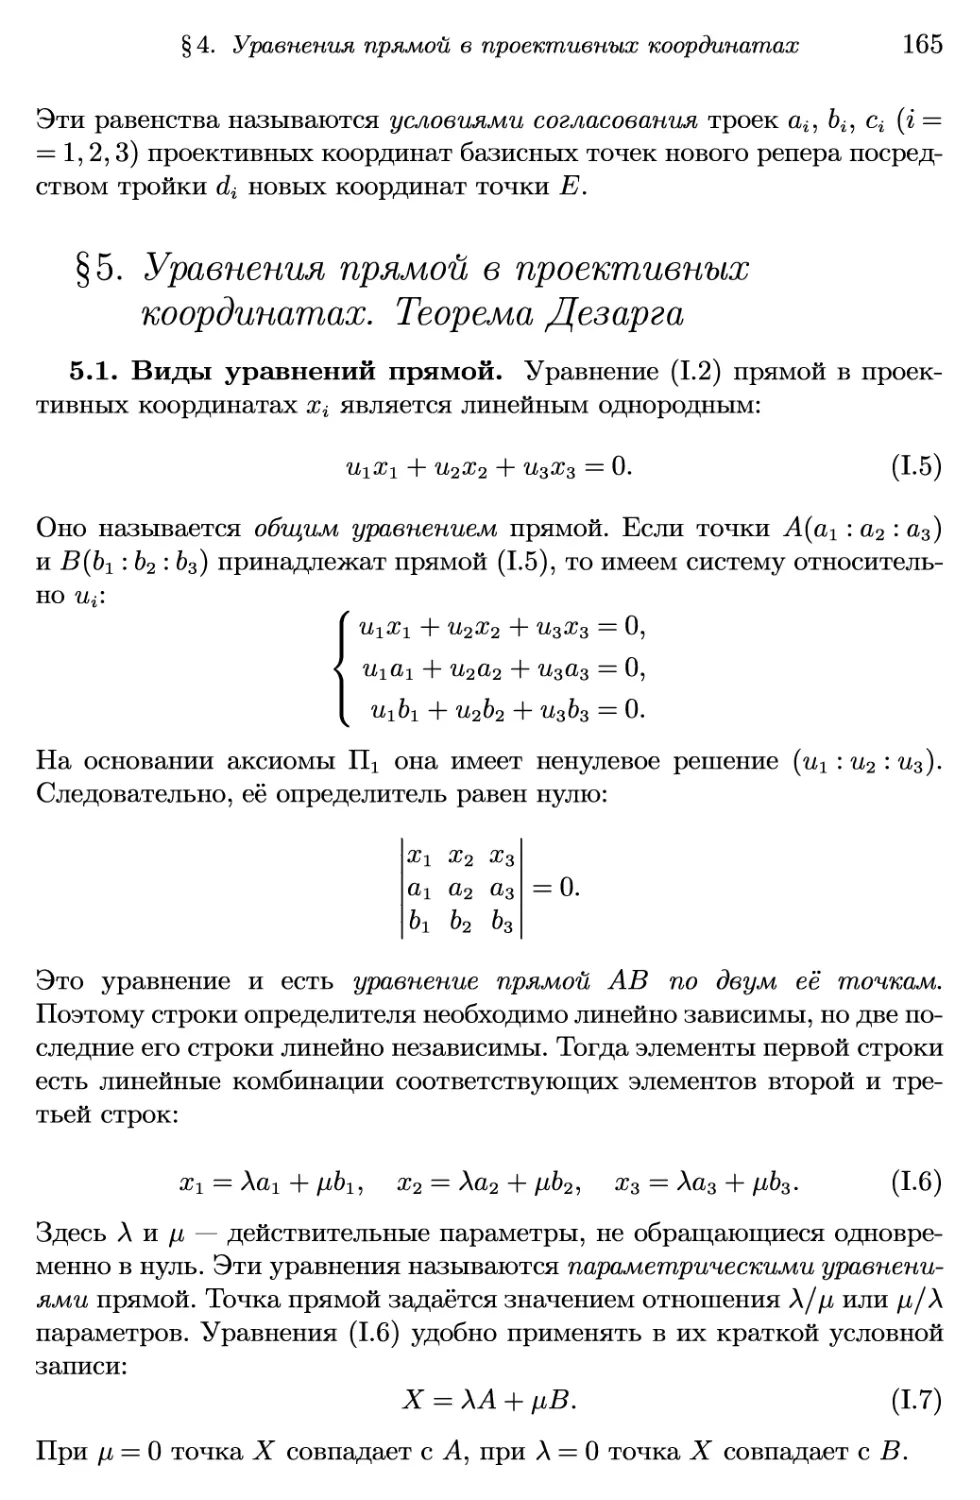 §5. Уравнения прямой в проективных координатах. Теорема Дезарга